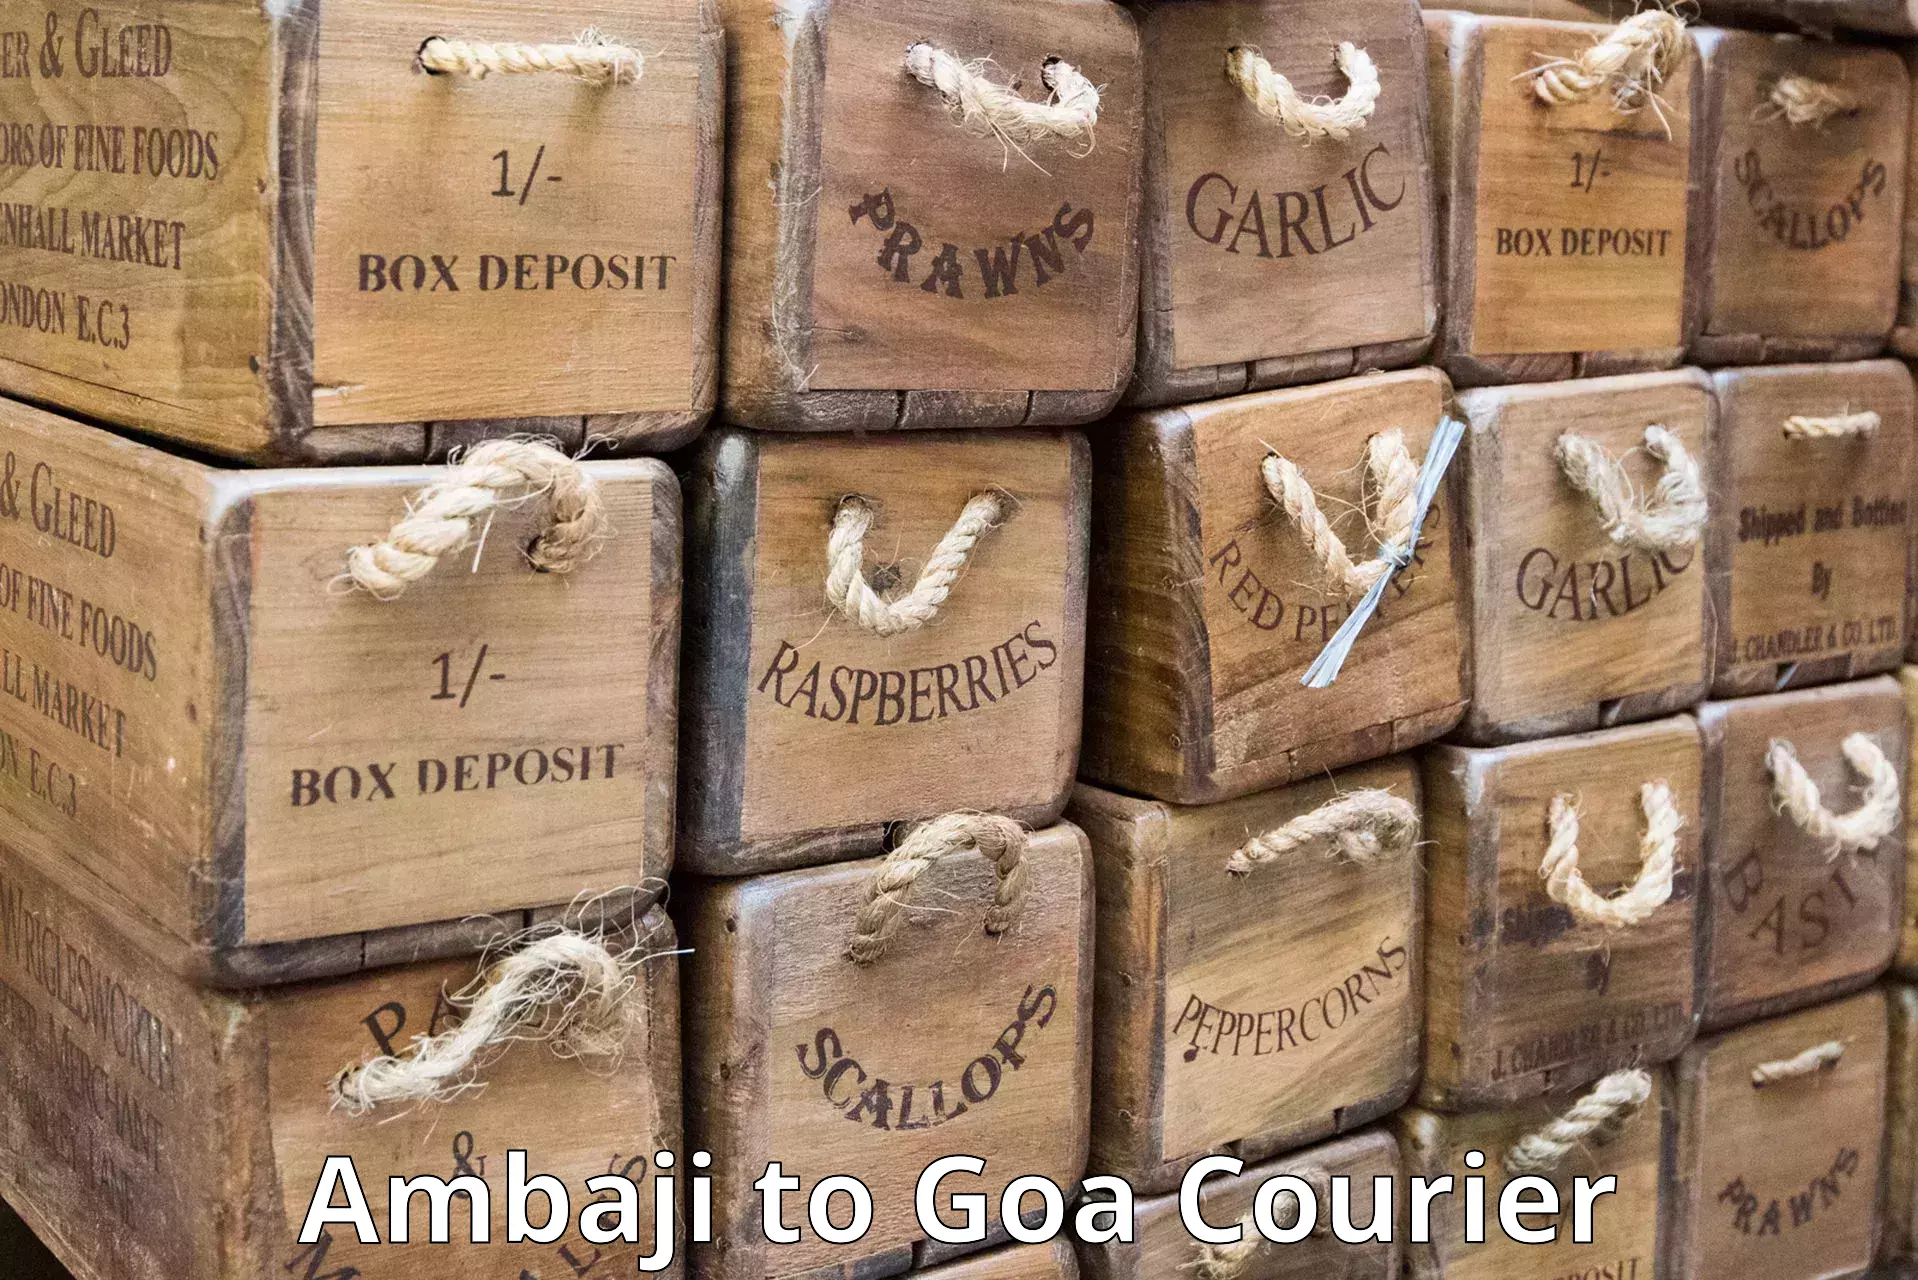 Express logistics providers Ambaji to Vasco da Gama